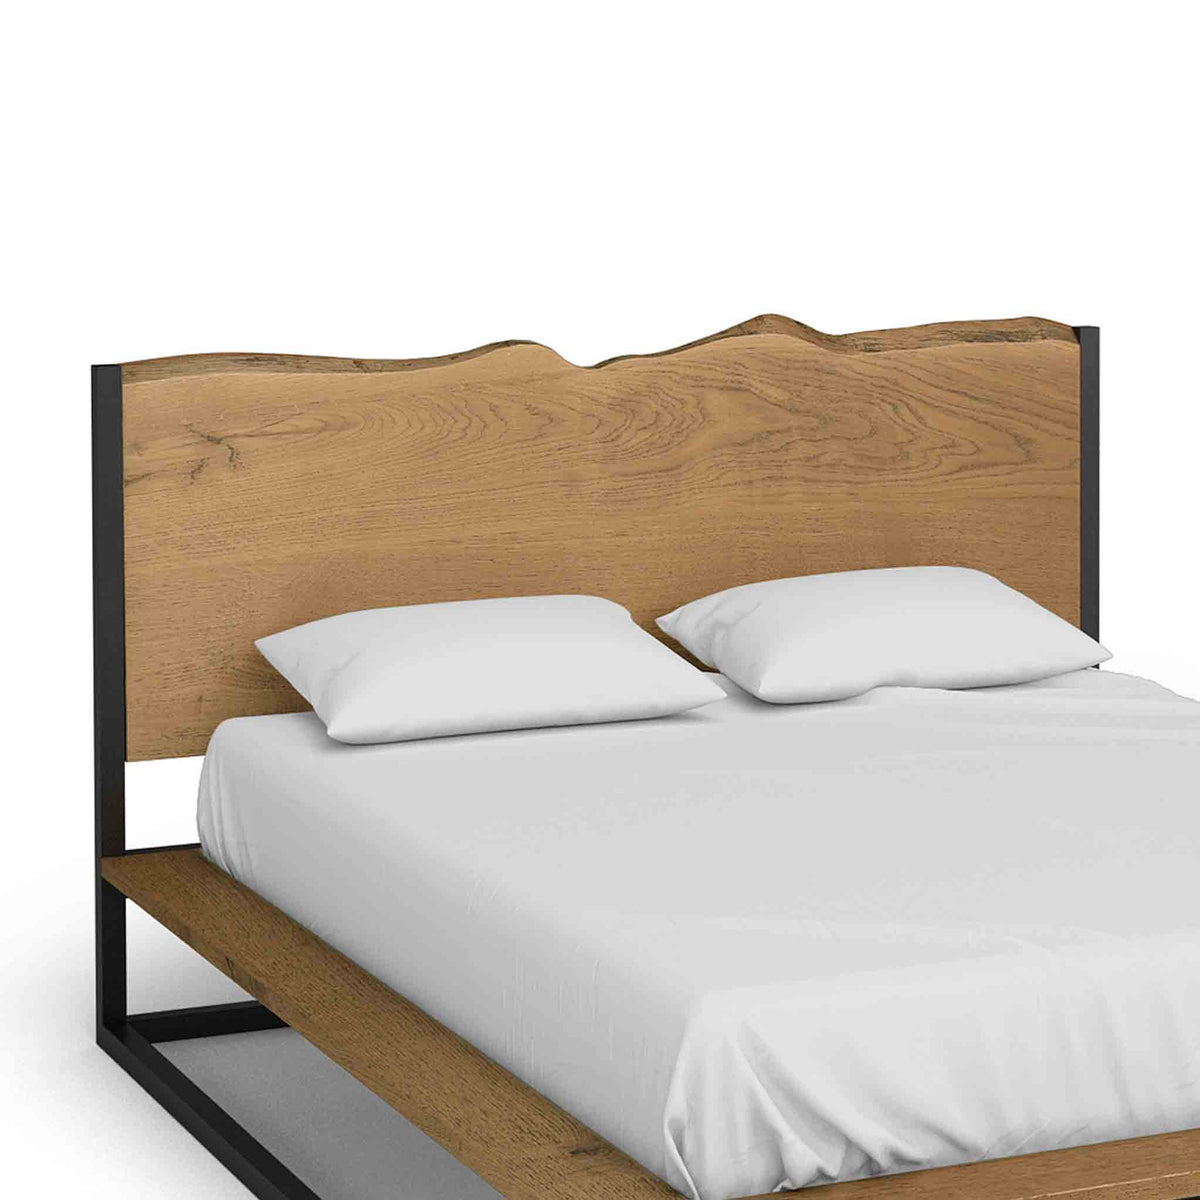 Oak Mill 5' King Size Platform Bed Frame - Waxed Oak